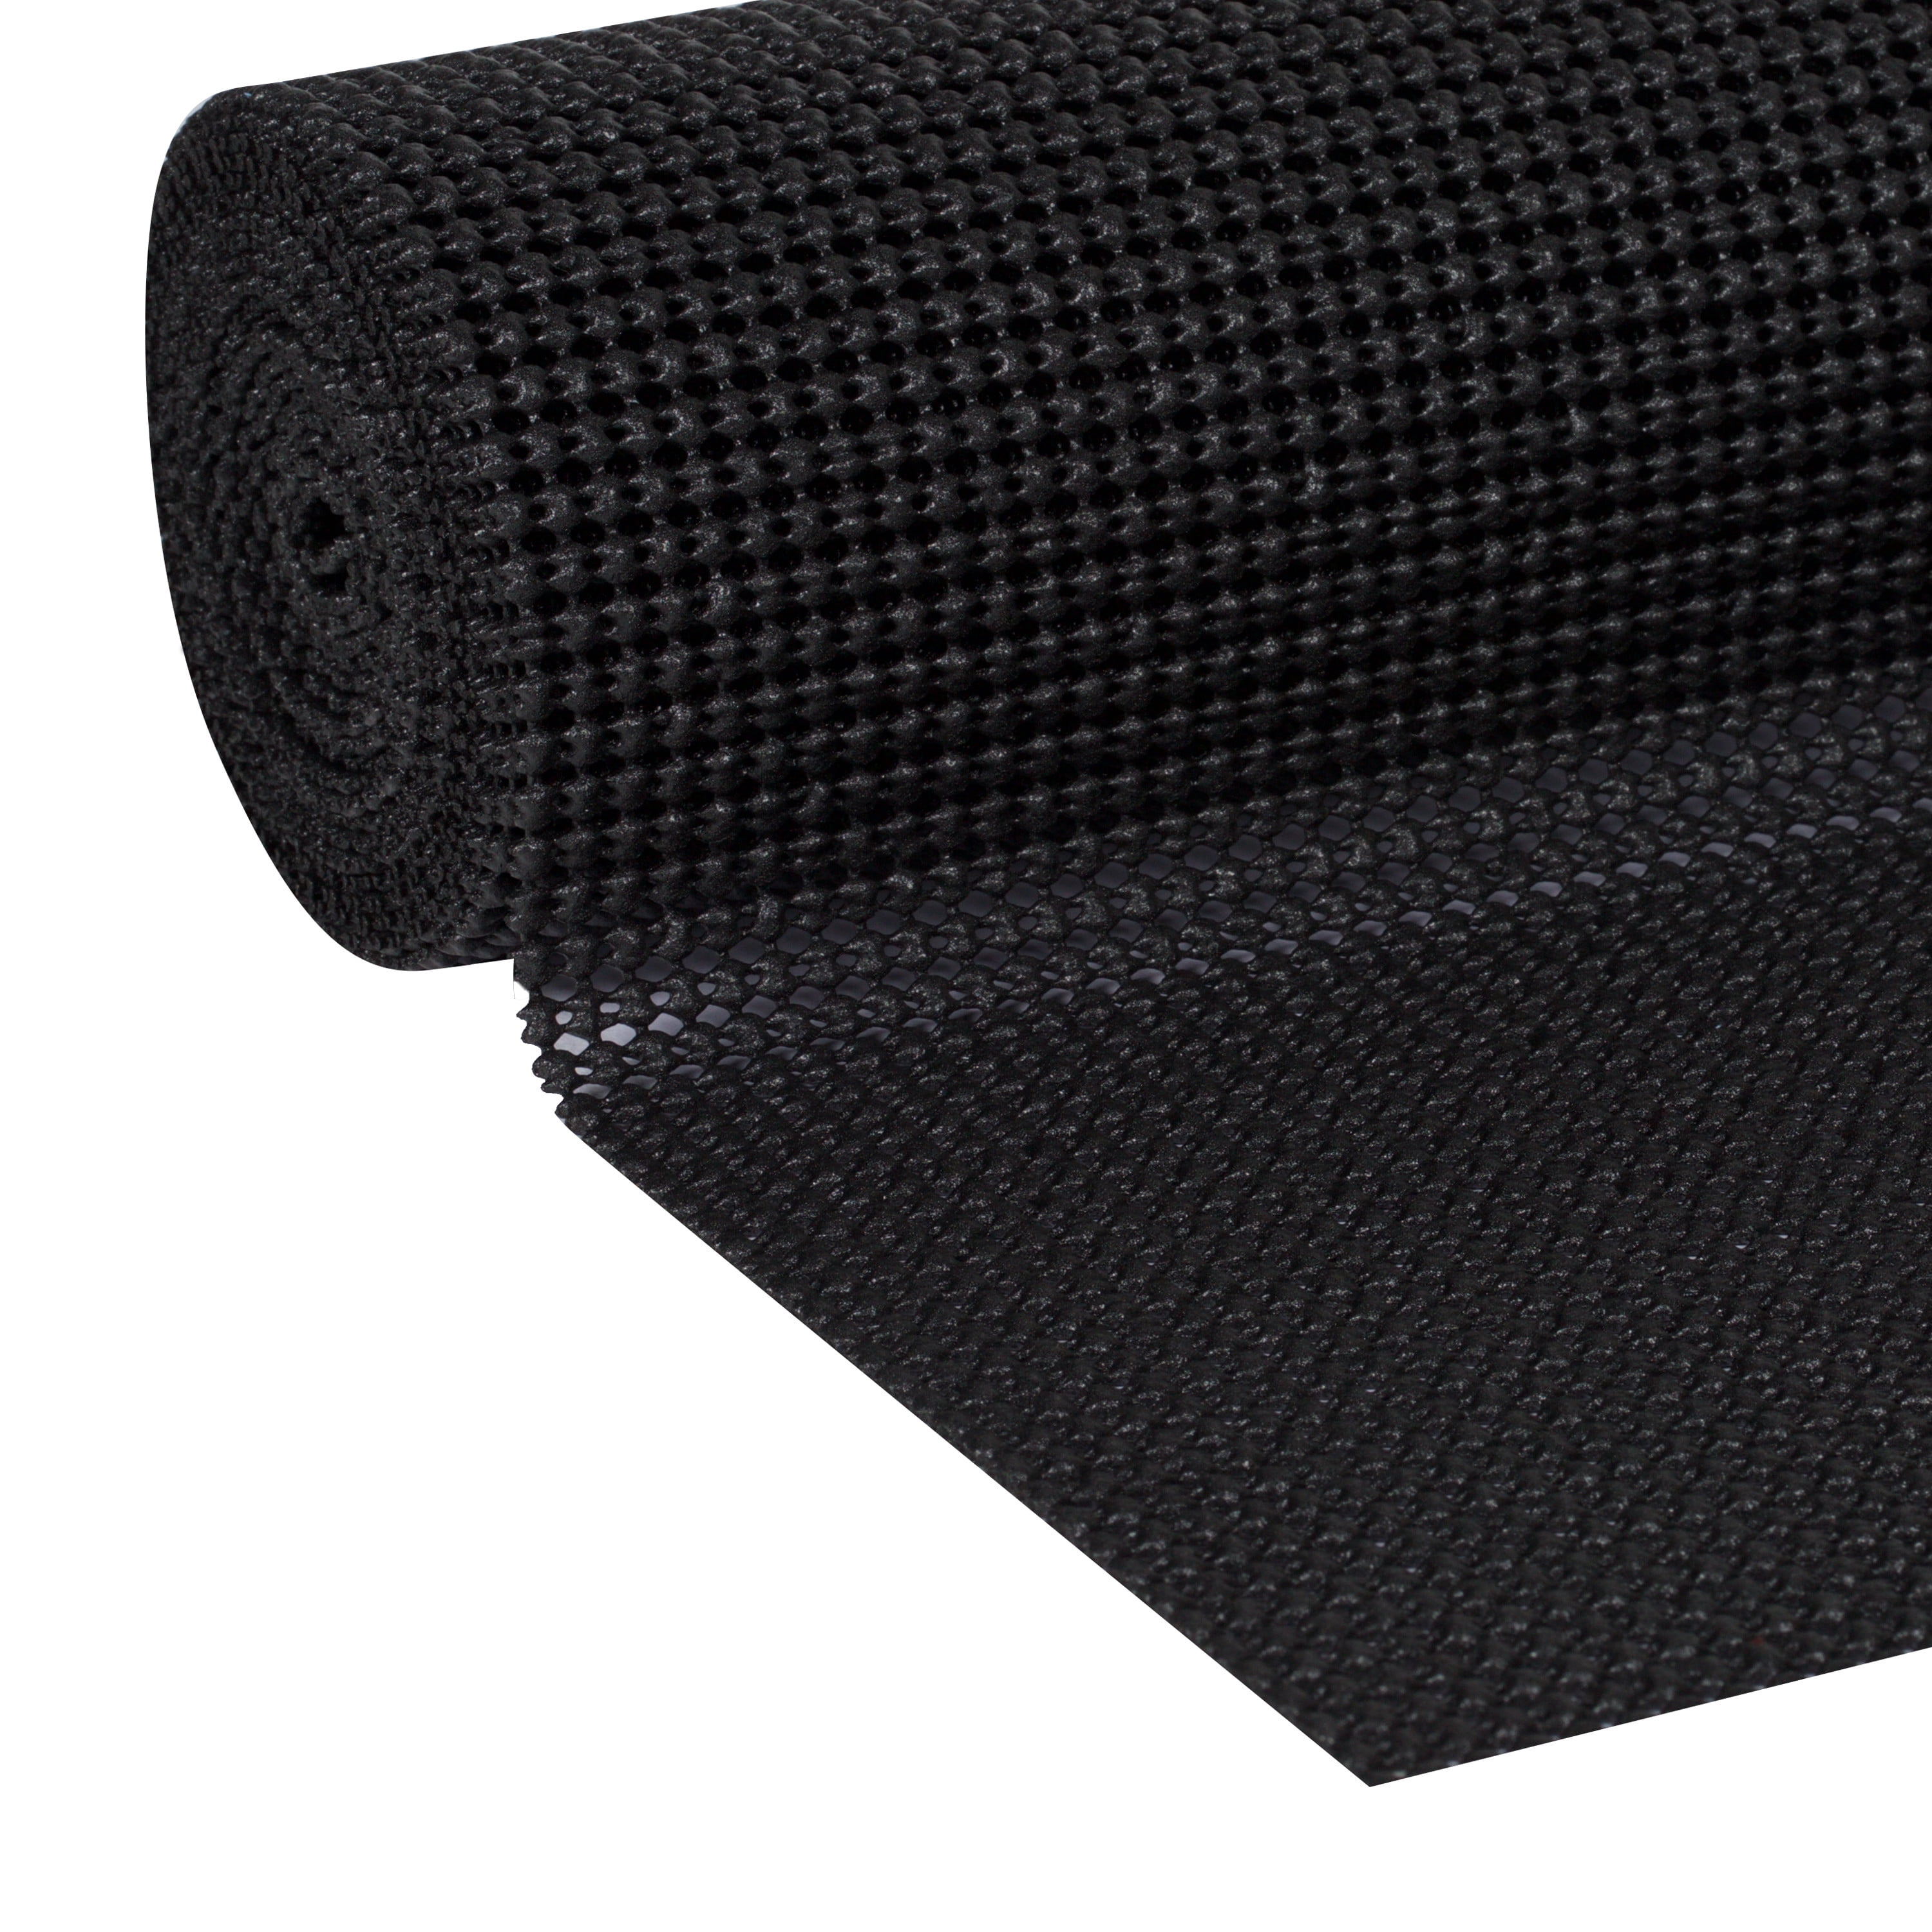 EasyLiner Select Grip 12 in. x 10 ft. Shelf Liner, Black